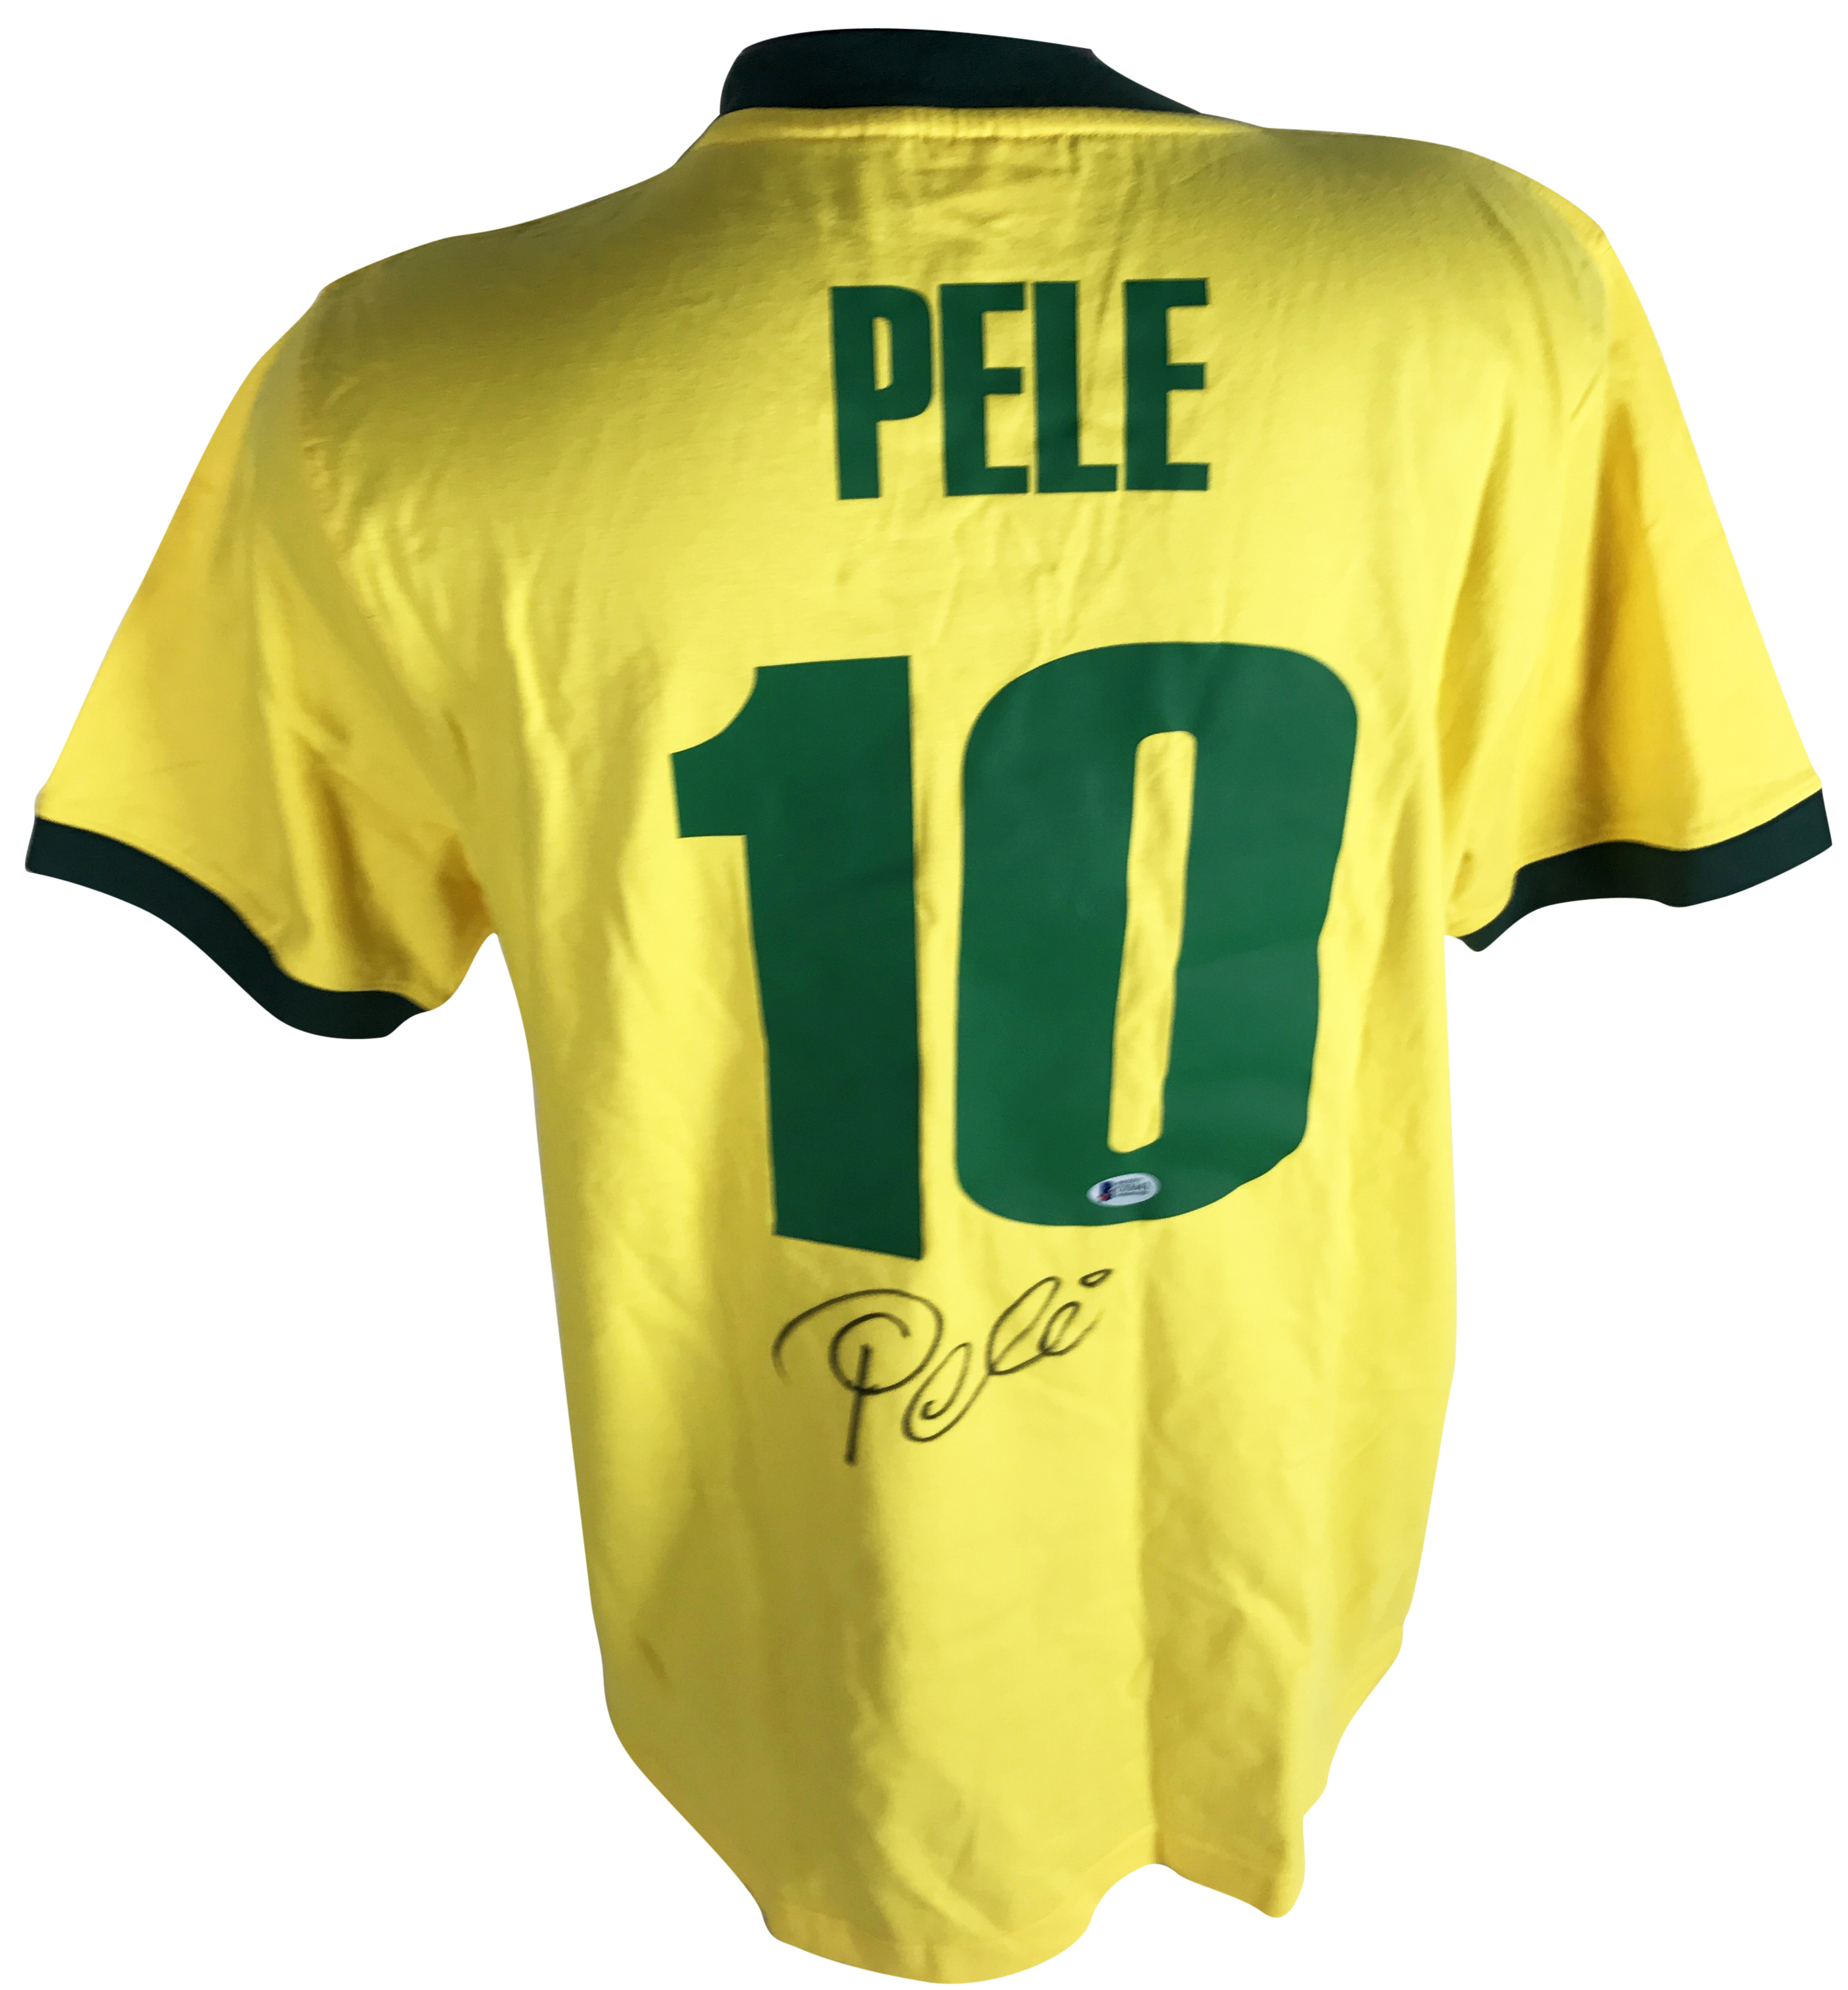 Lot Detail - Pele Signed Brazil World Cup Jersey (Beckett/BAS)